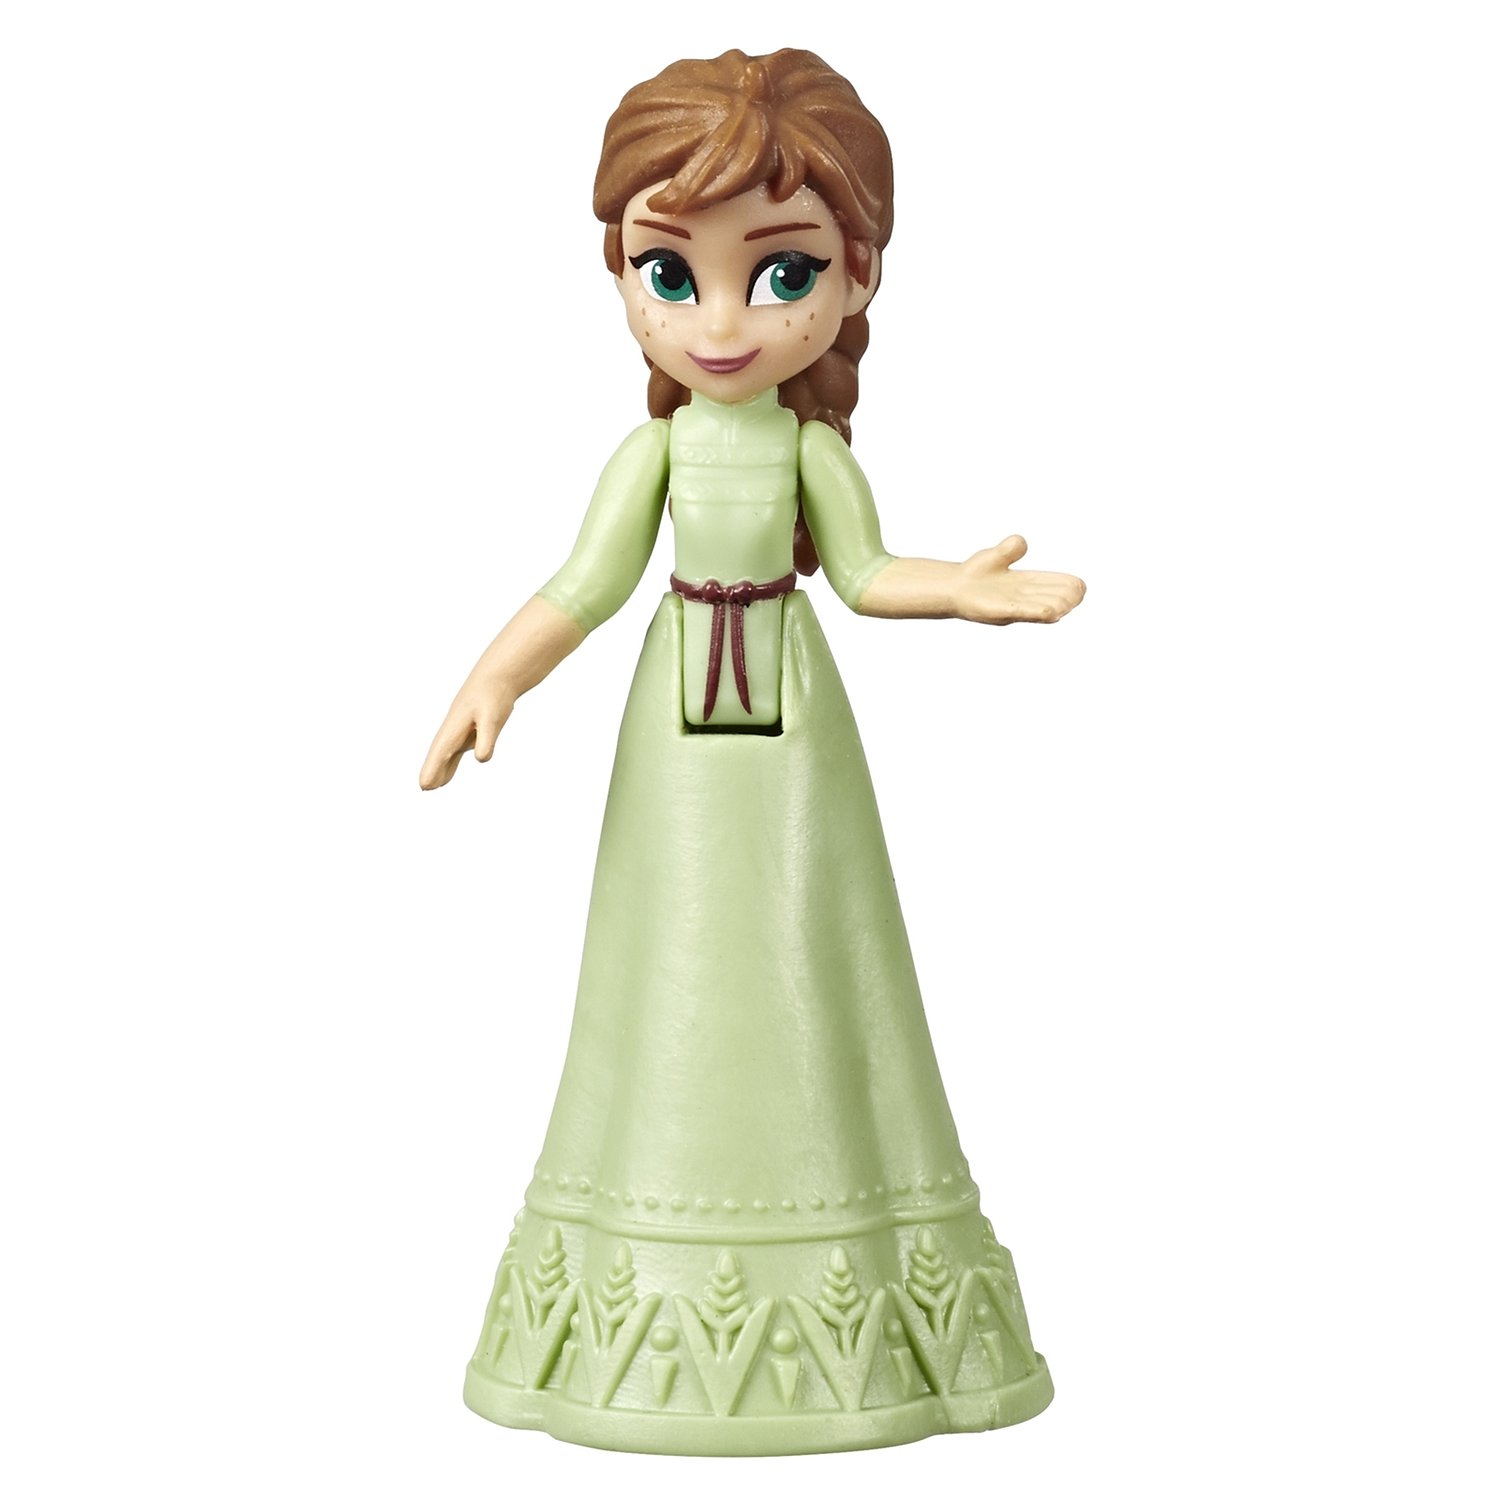 Мини-кукла Disney Princess Hasbro Frozen 2 (Холодное сердце 2) сюрприз, E7276EU4